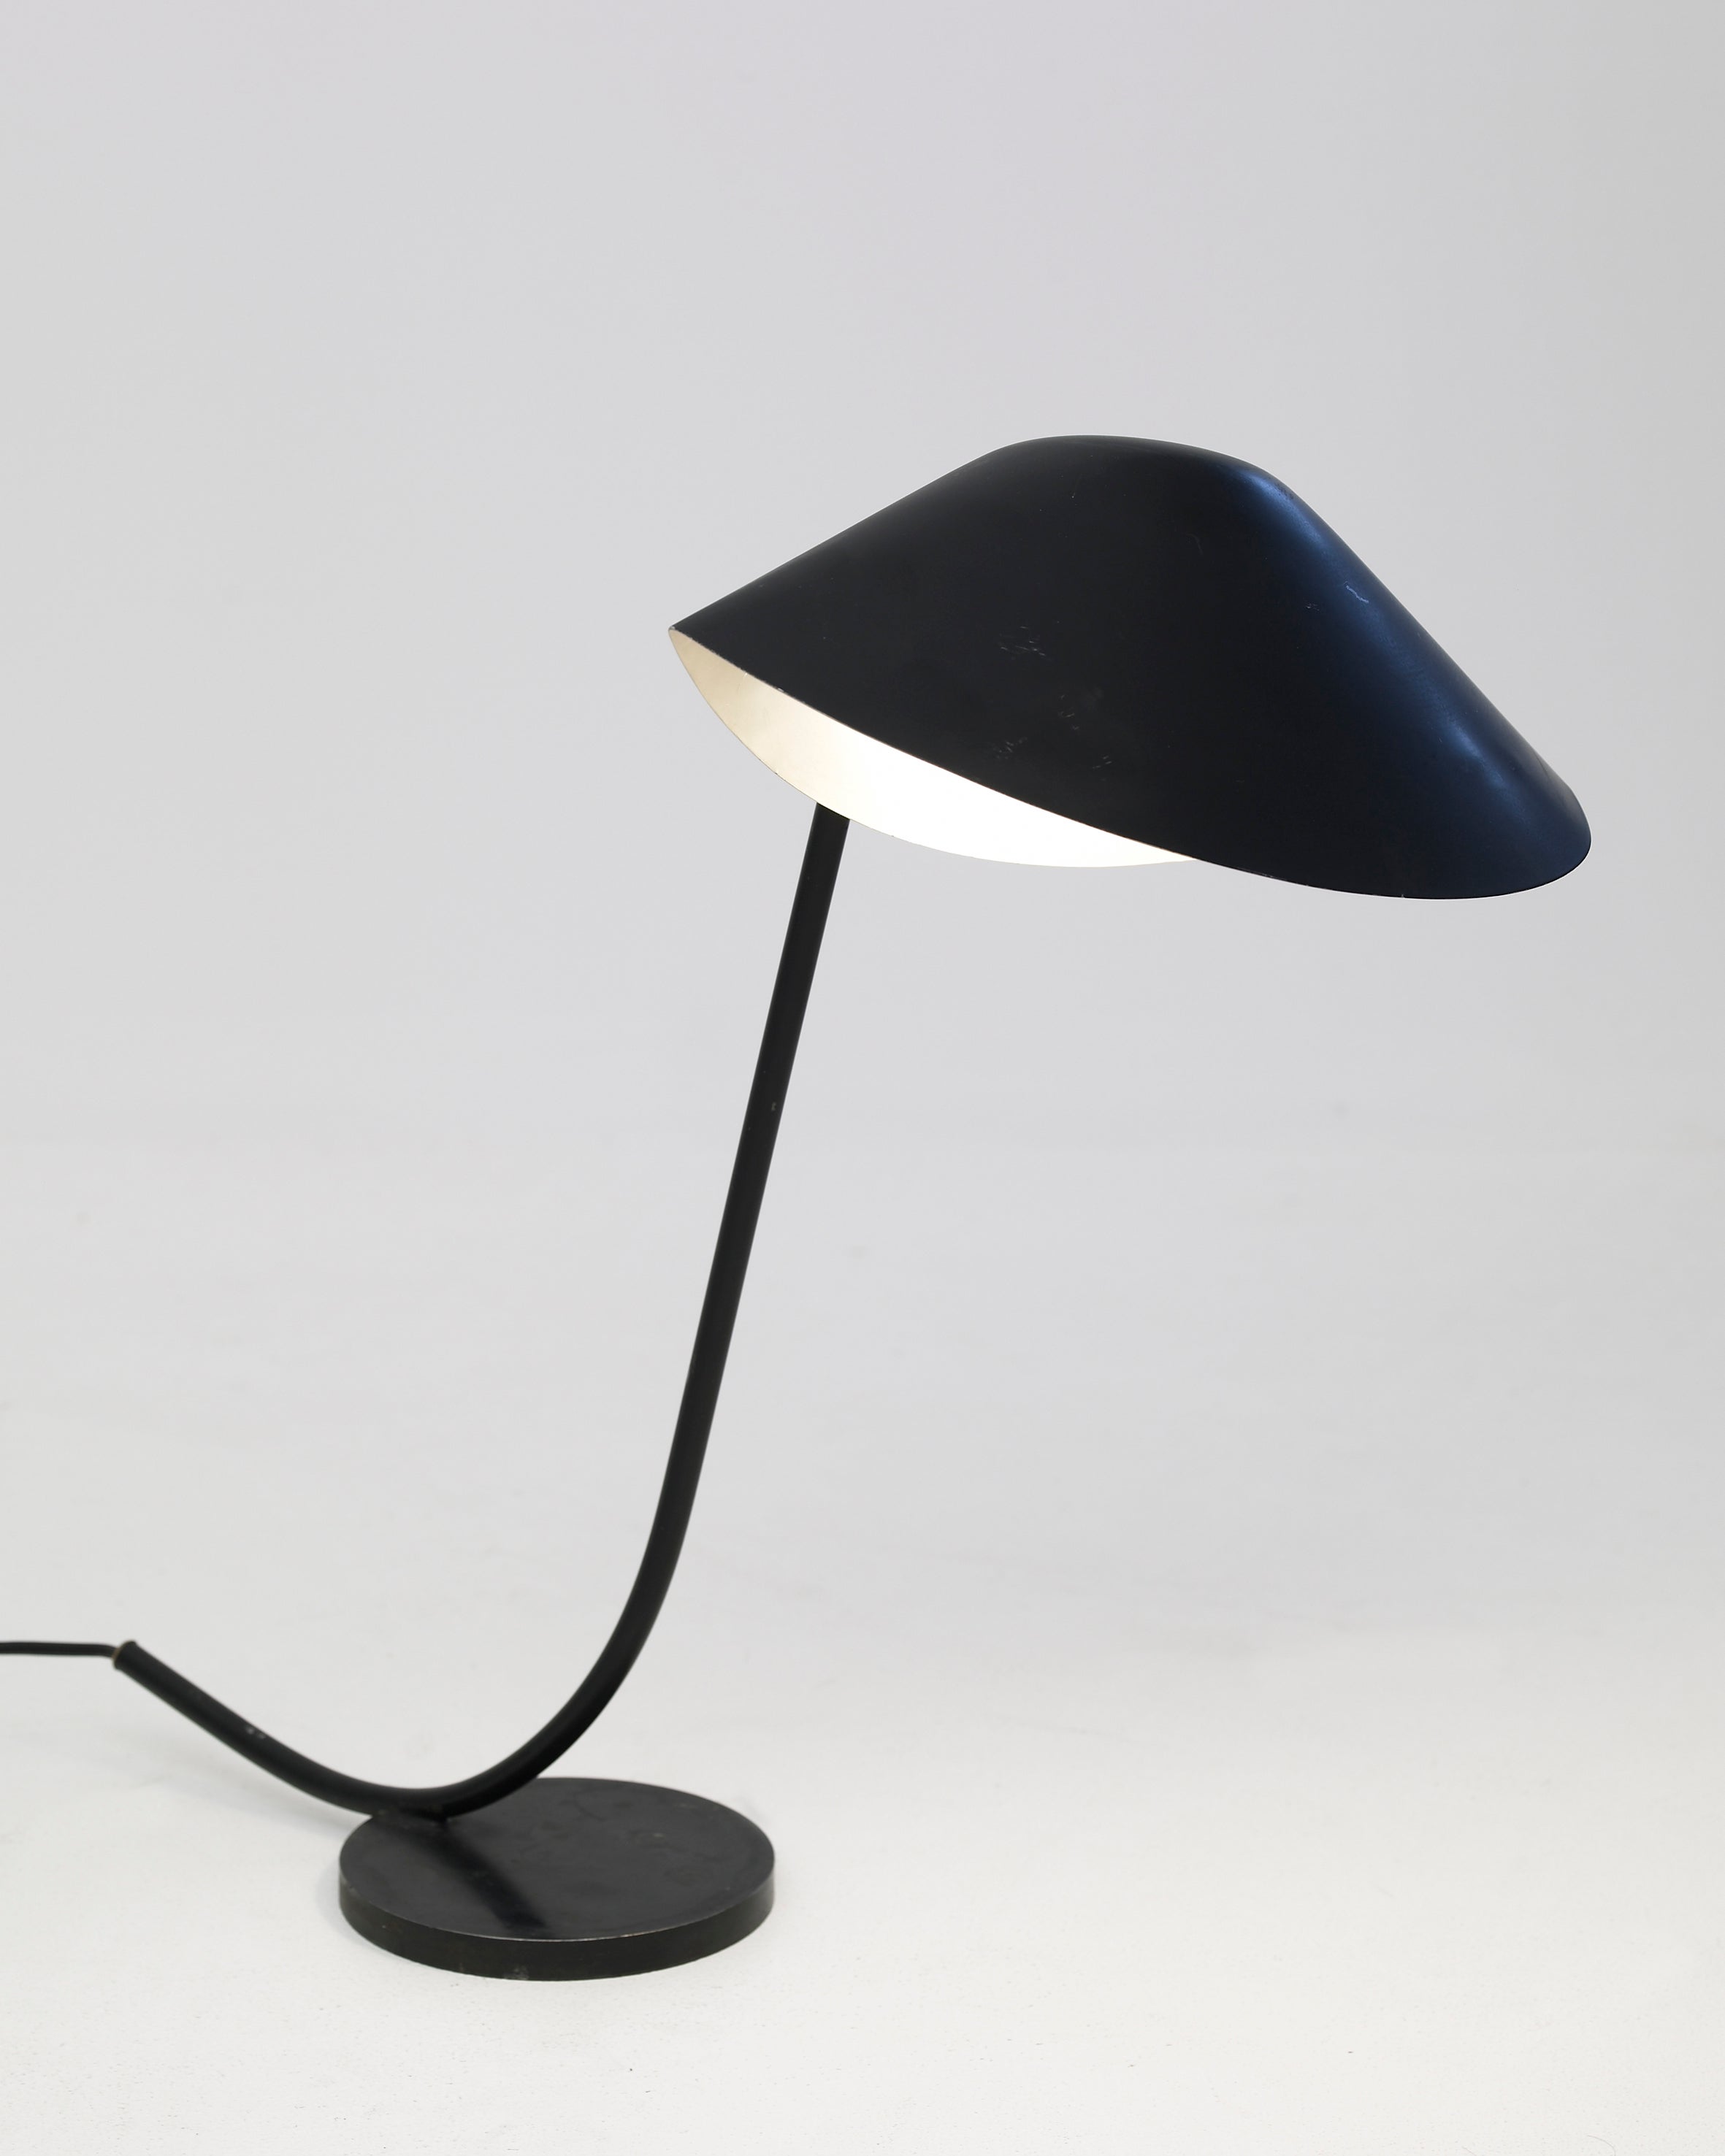 Desk light "Antony" By Serge Mouille, 1954-1955